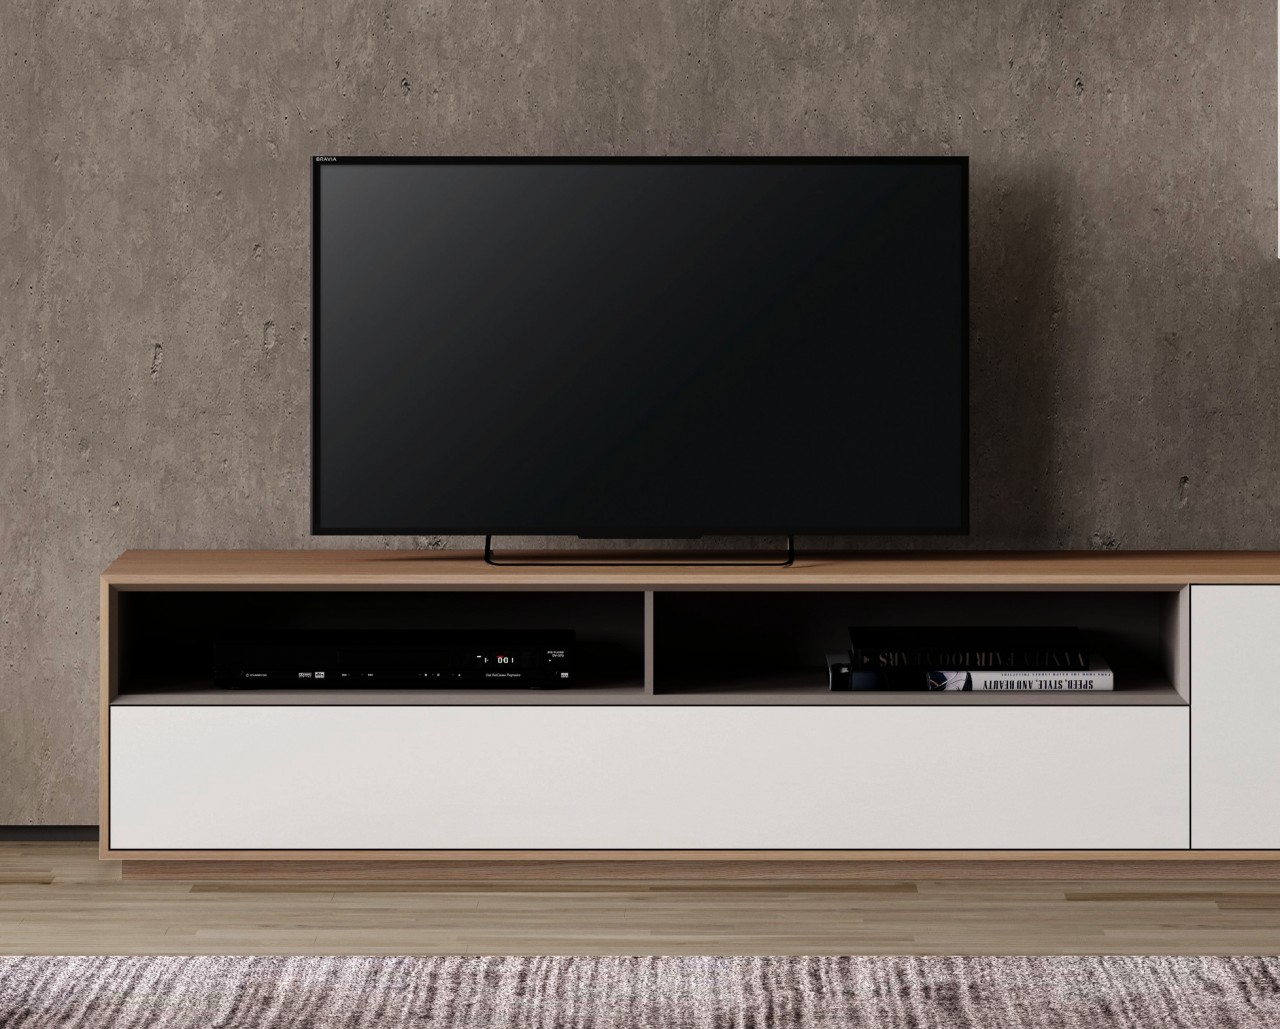 Organizar o seu espaço com estilo nunca foi tão fácil! O móvel TV Enkel 01 é a solução perfeita para tornar a sua sala de estar mais elegante e prática.